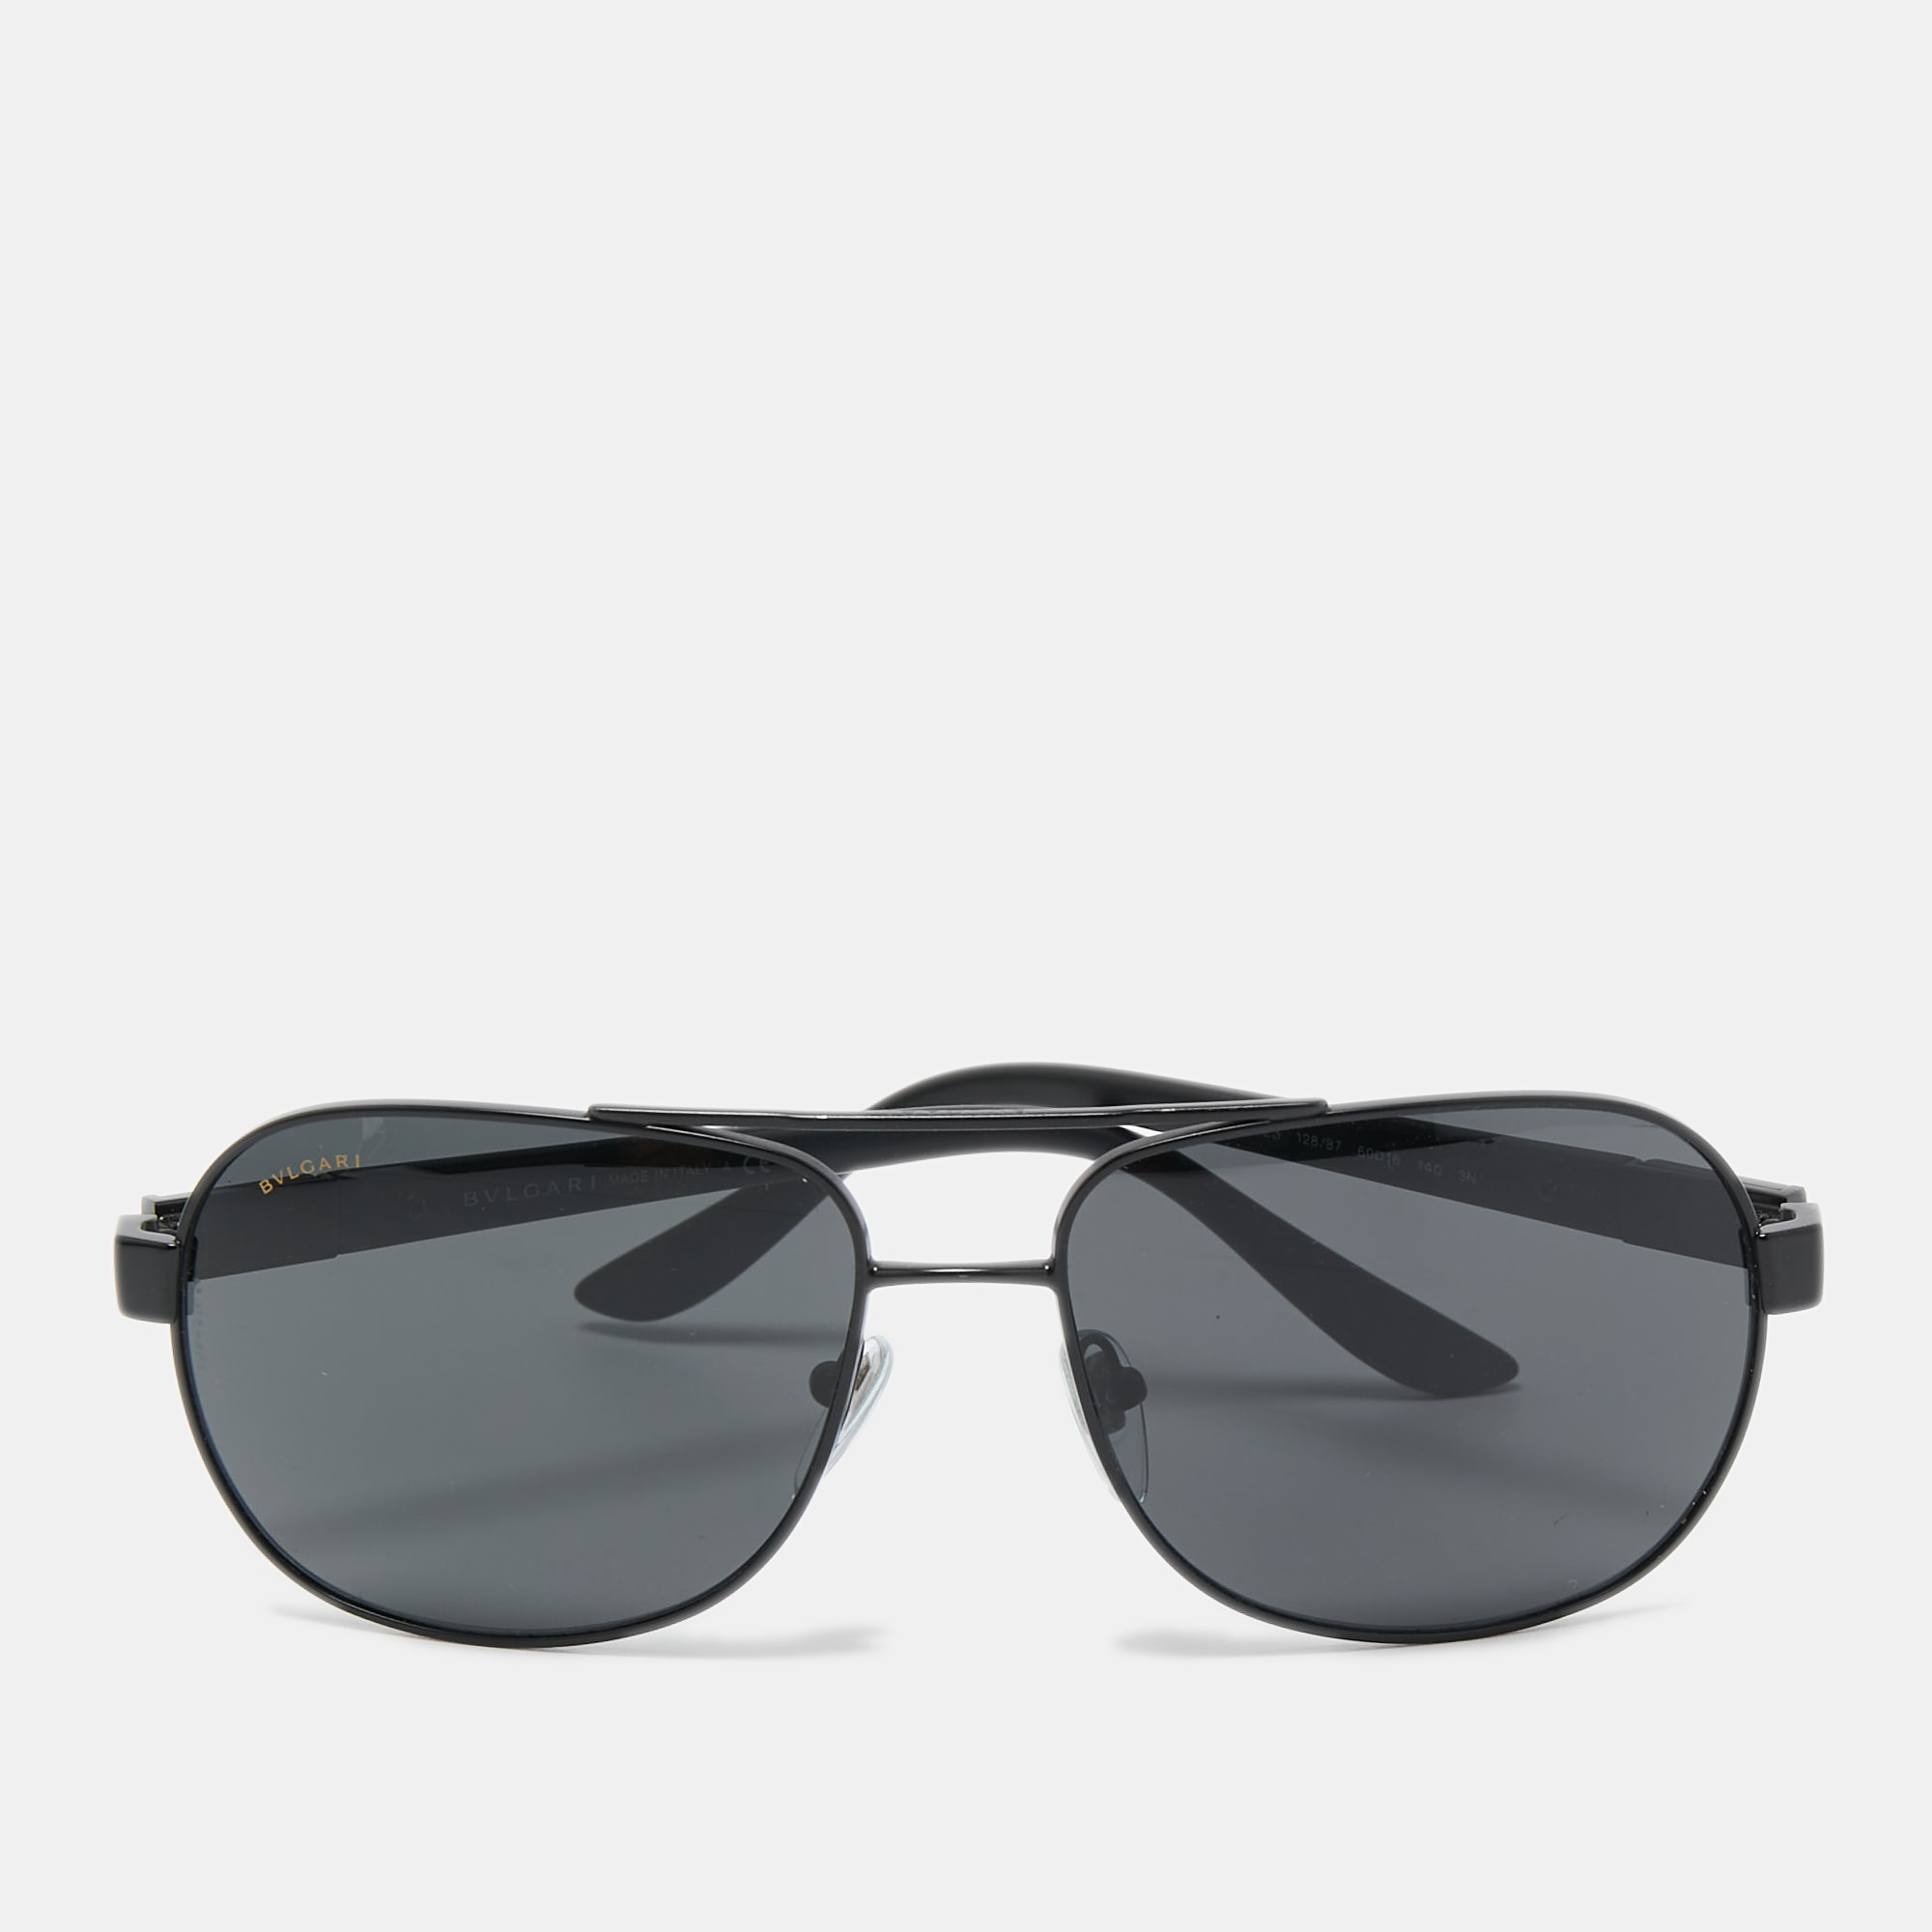 Bvlgari Black 5023 Aviator Sunglasses